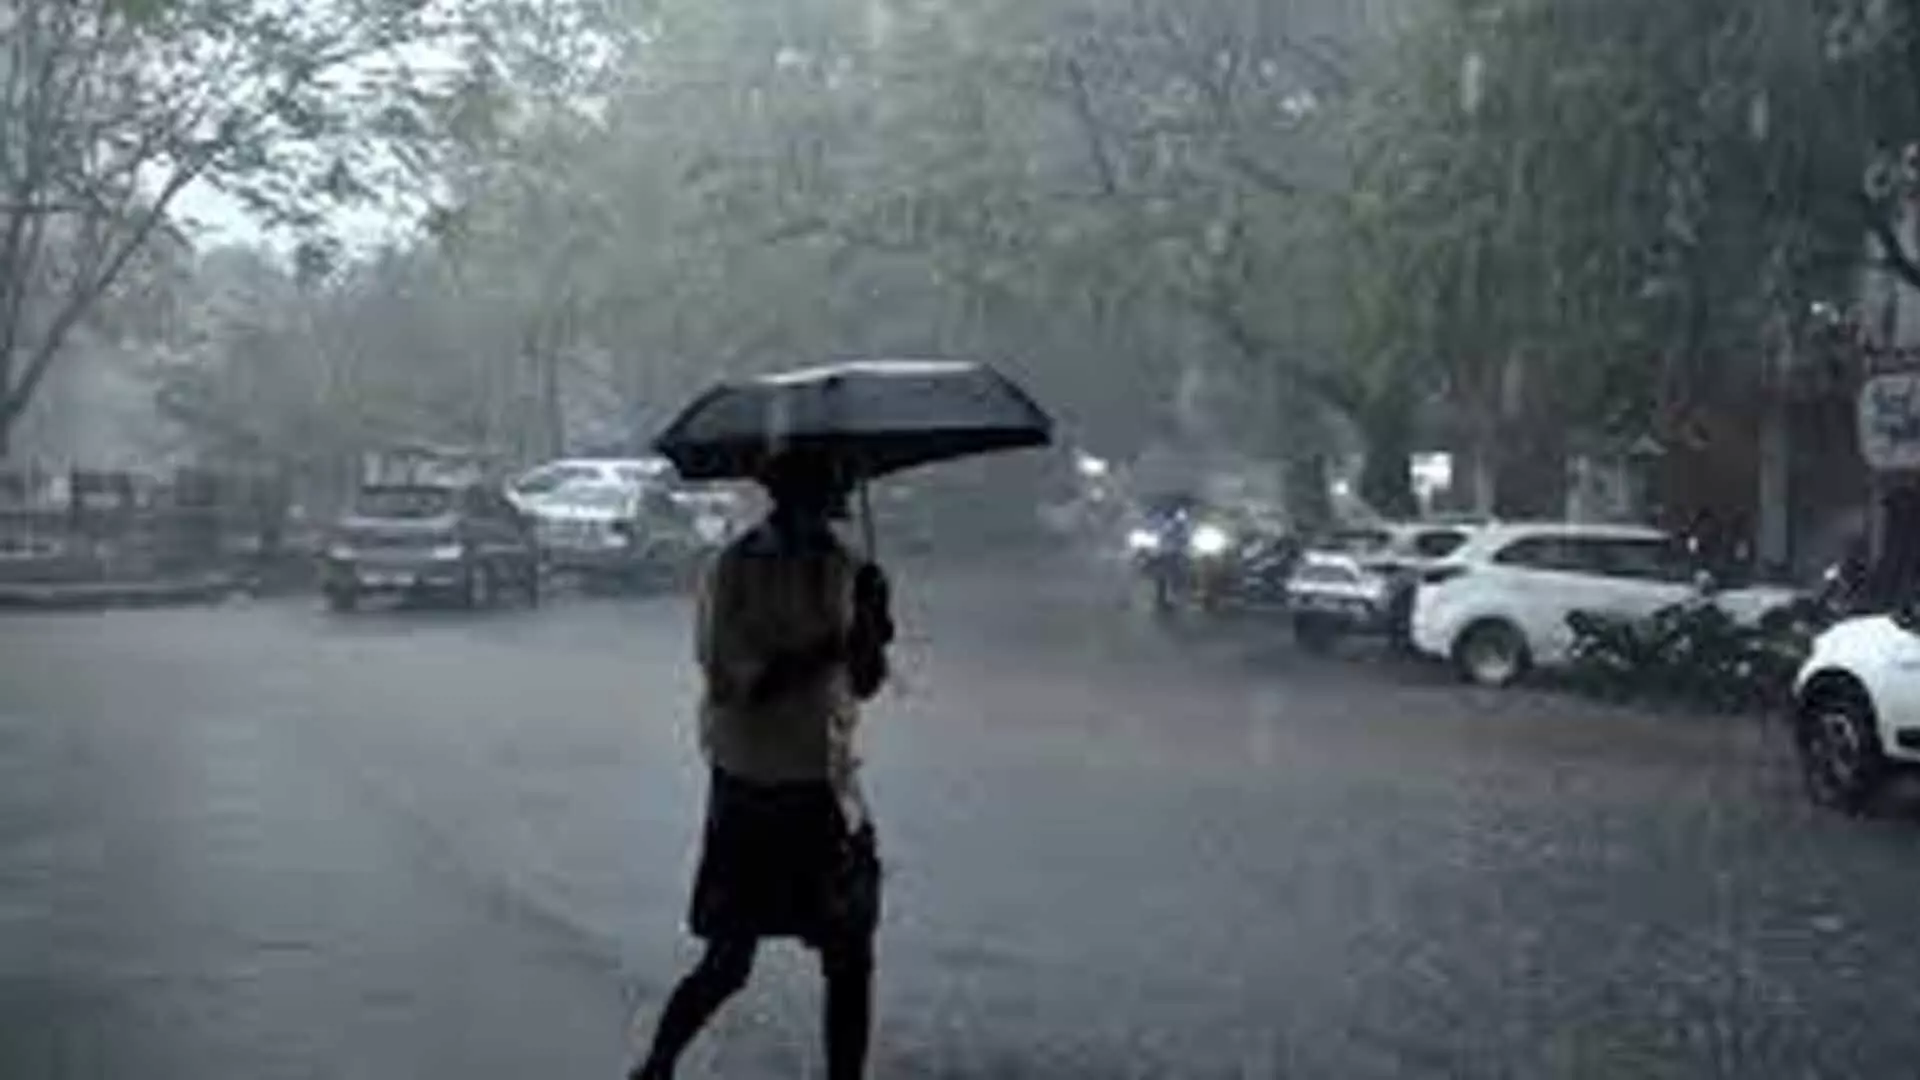 Tamil Nadu News: नीलगिरी में भारी बारिश के कारण बाढ़ की चेतावनी जारी